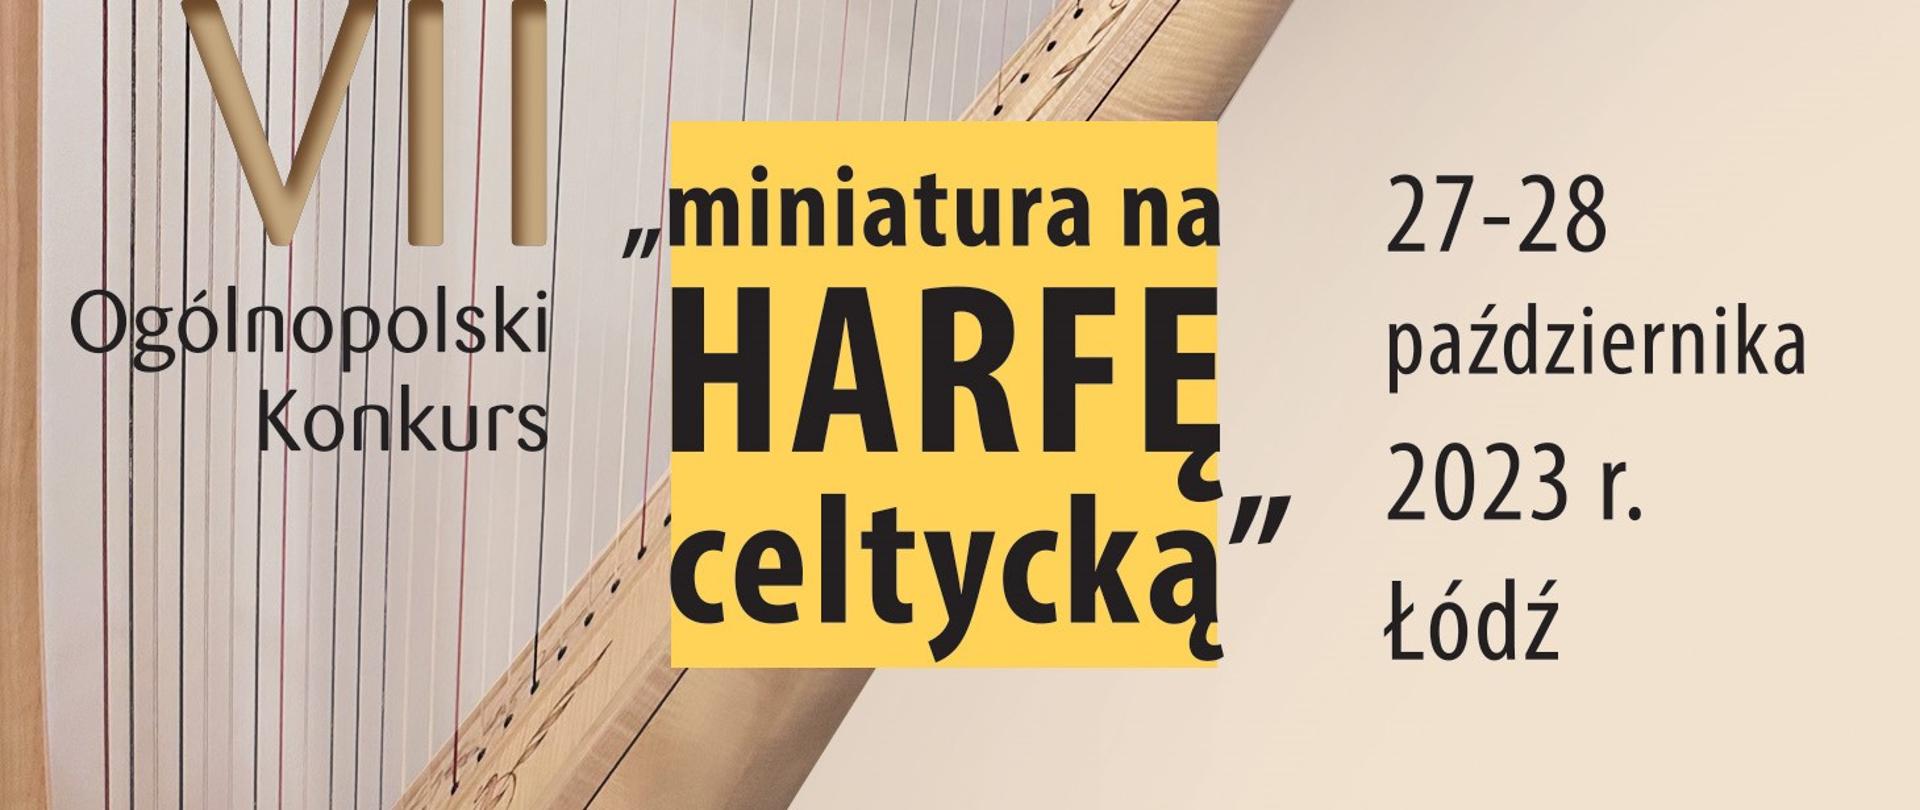 Rysunek harfy na beżowym tle. Na pierwszym planie napis VII Ogólnopolski Konkurs "miniatura na harfę celtycką" 27-28 października 2023r. Łódź.